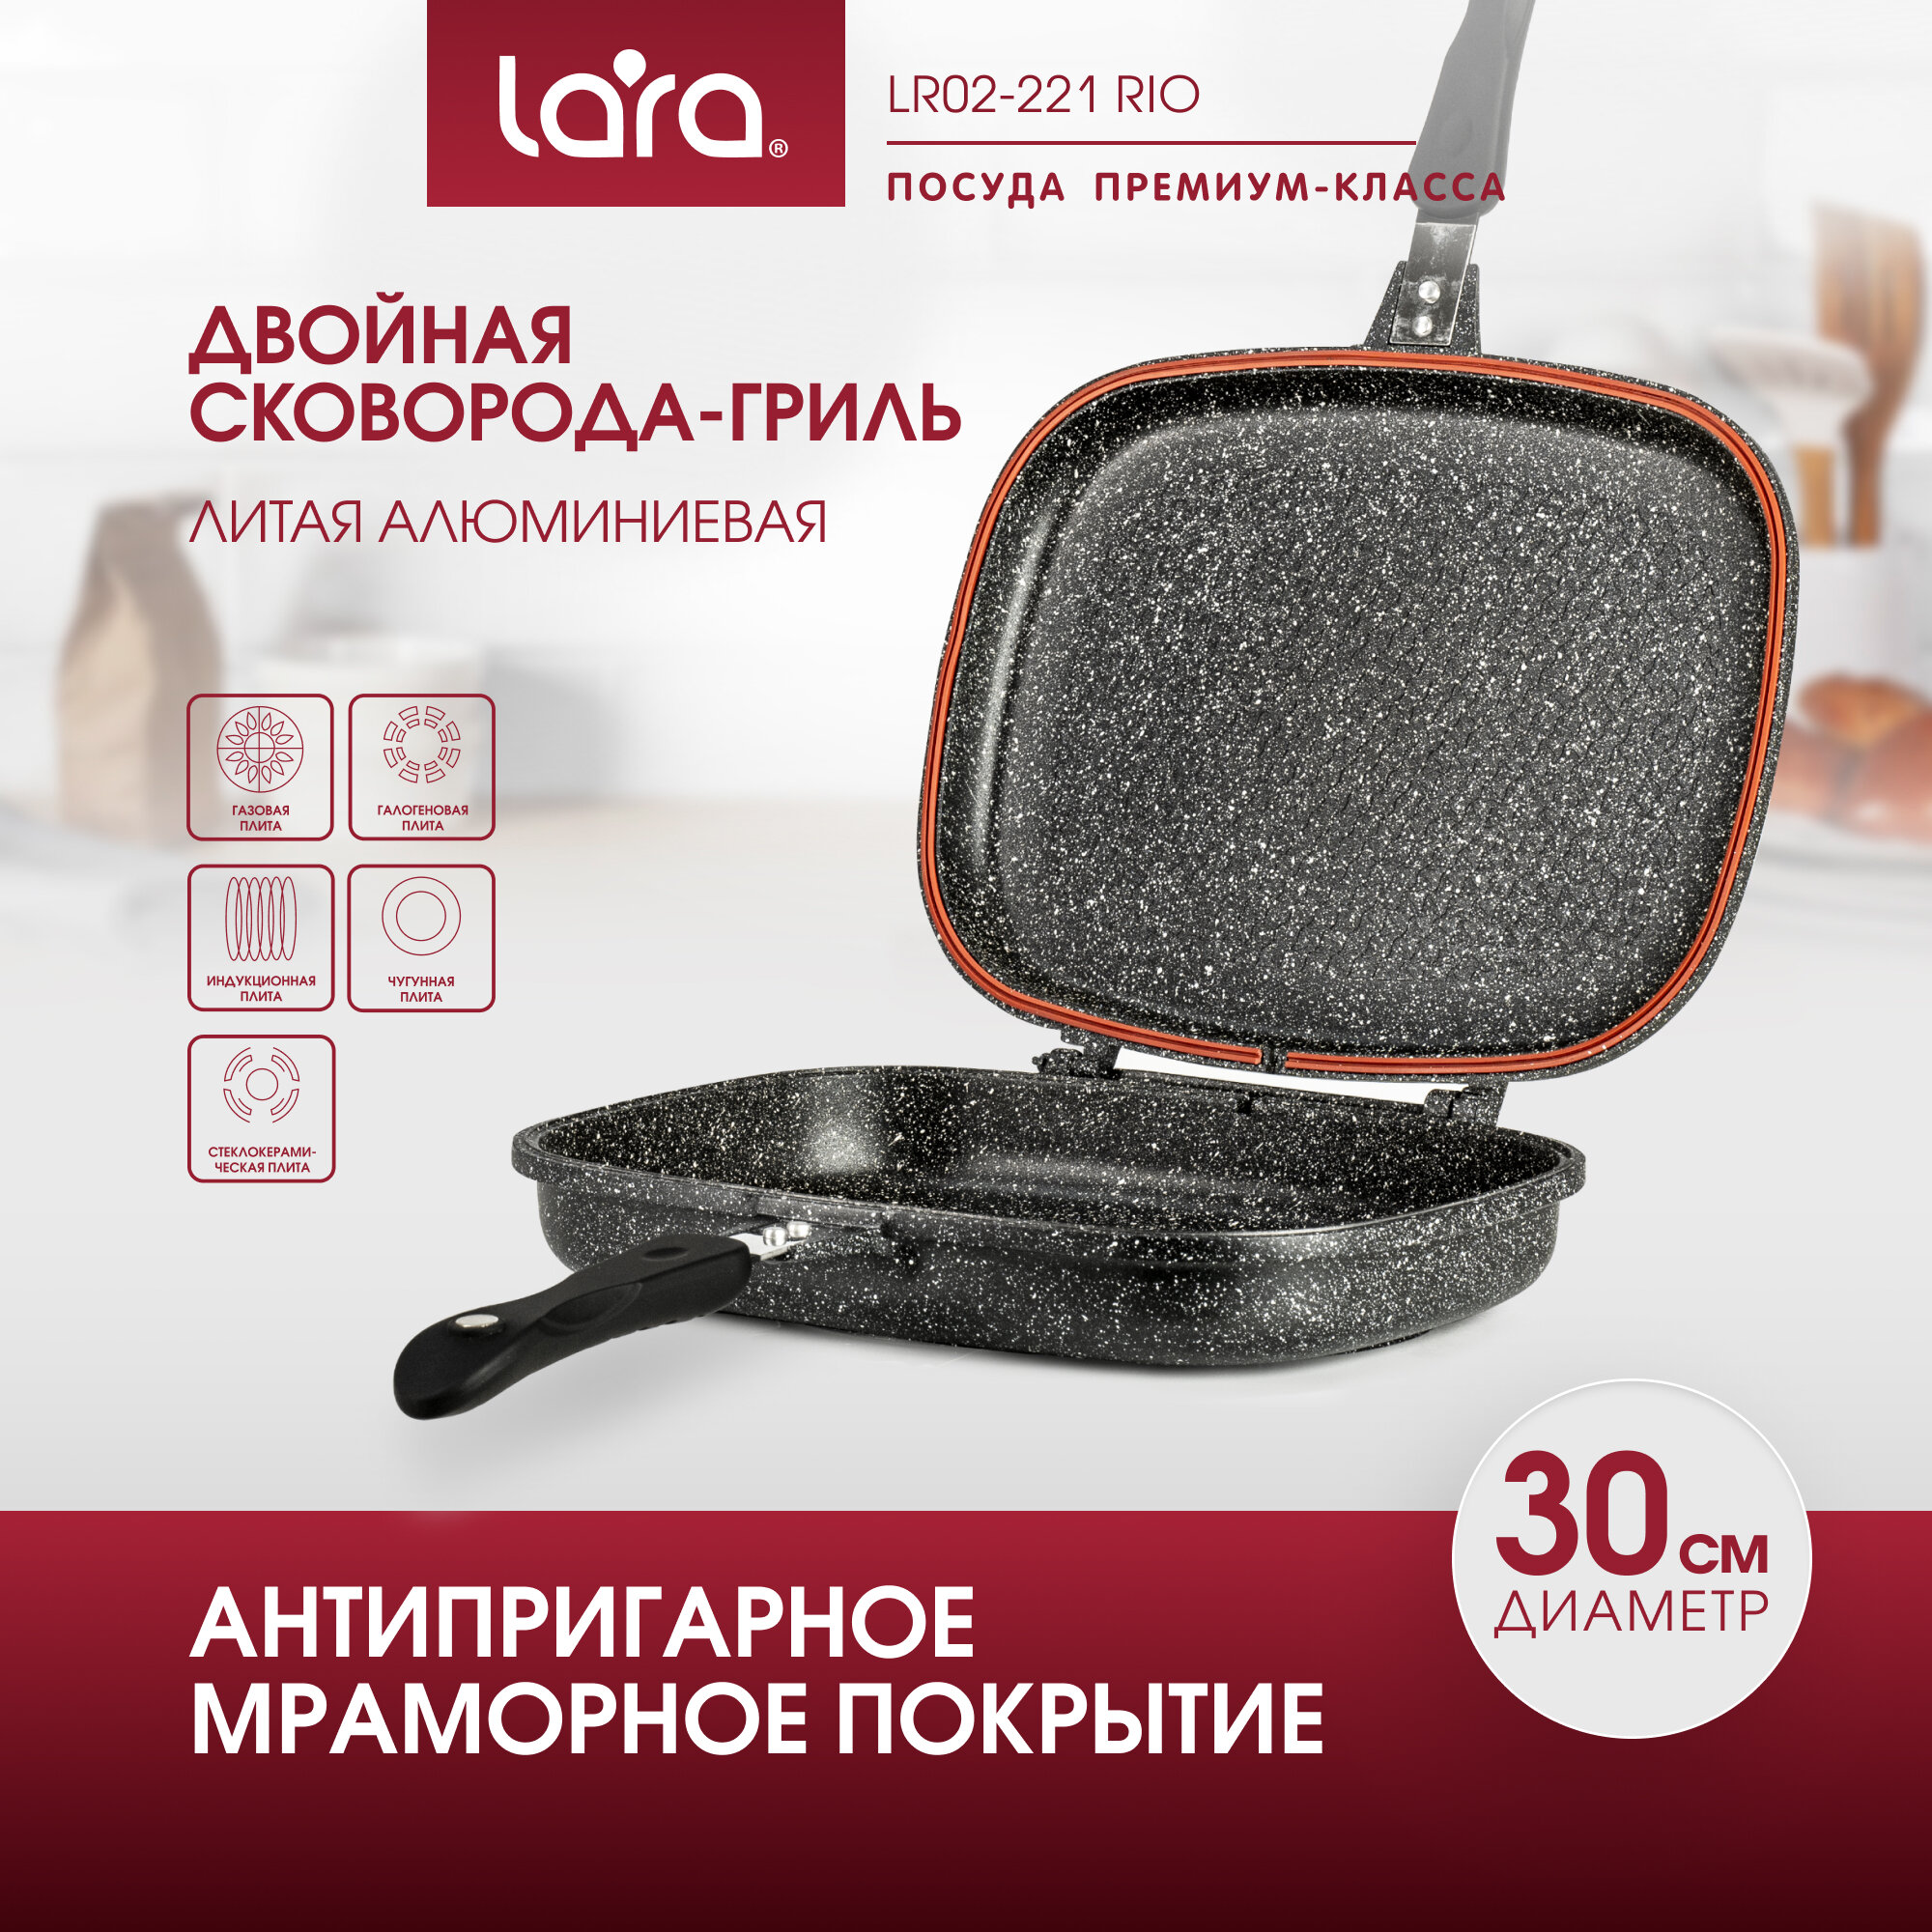 Сковорода-гриль LARA LR02-221 Rio: d30 см, алюминиевая , 3-слойное мраморное покрытие